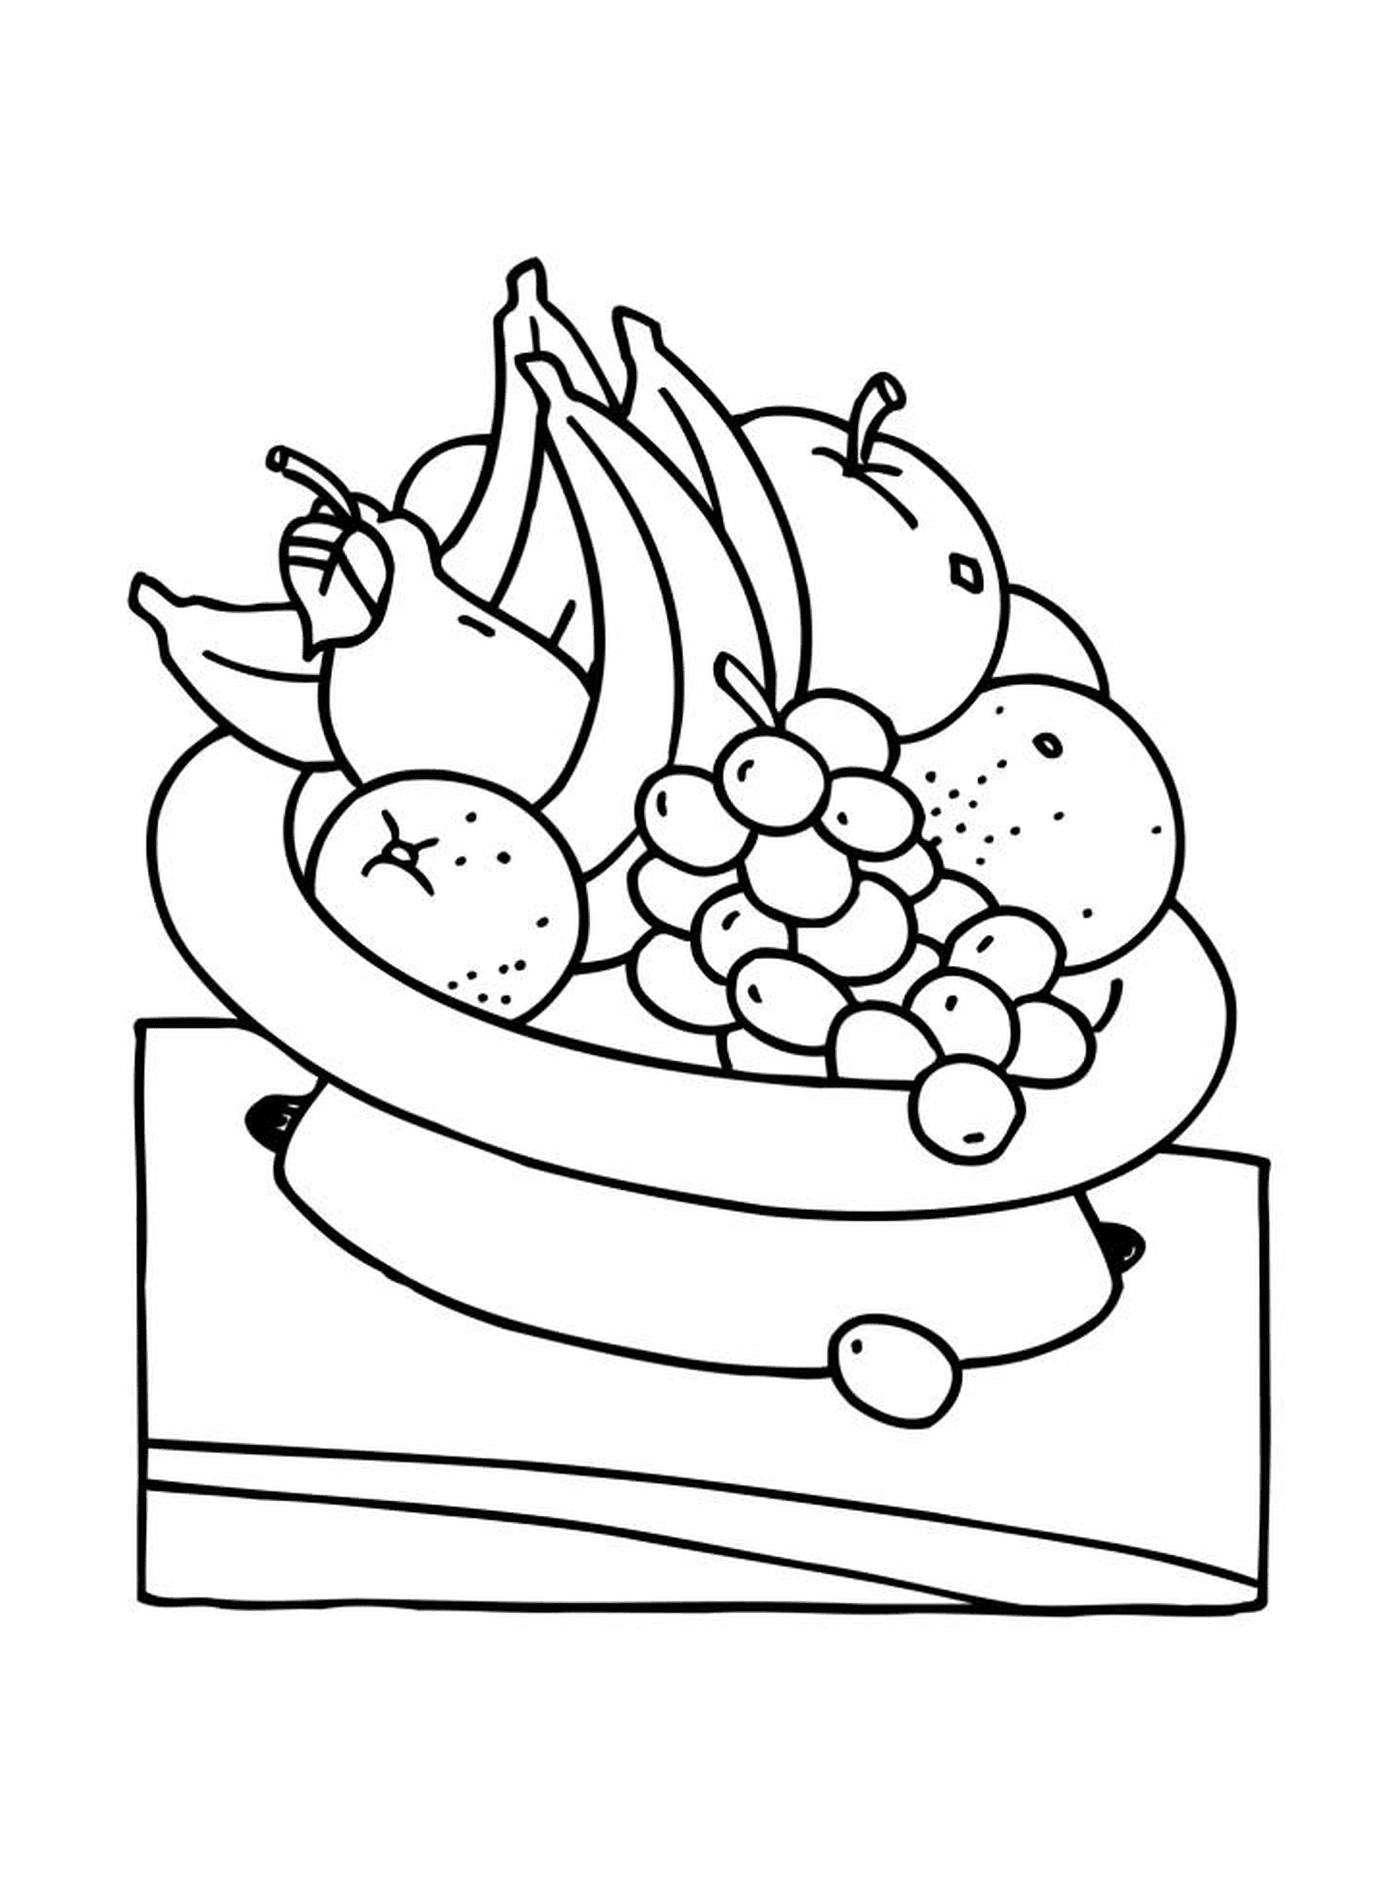  碗碗里装满各种水果, 